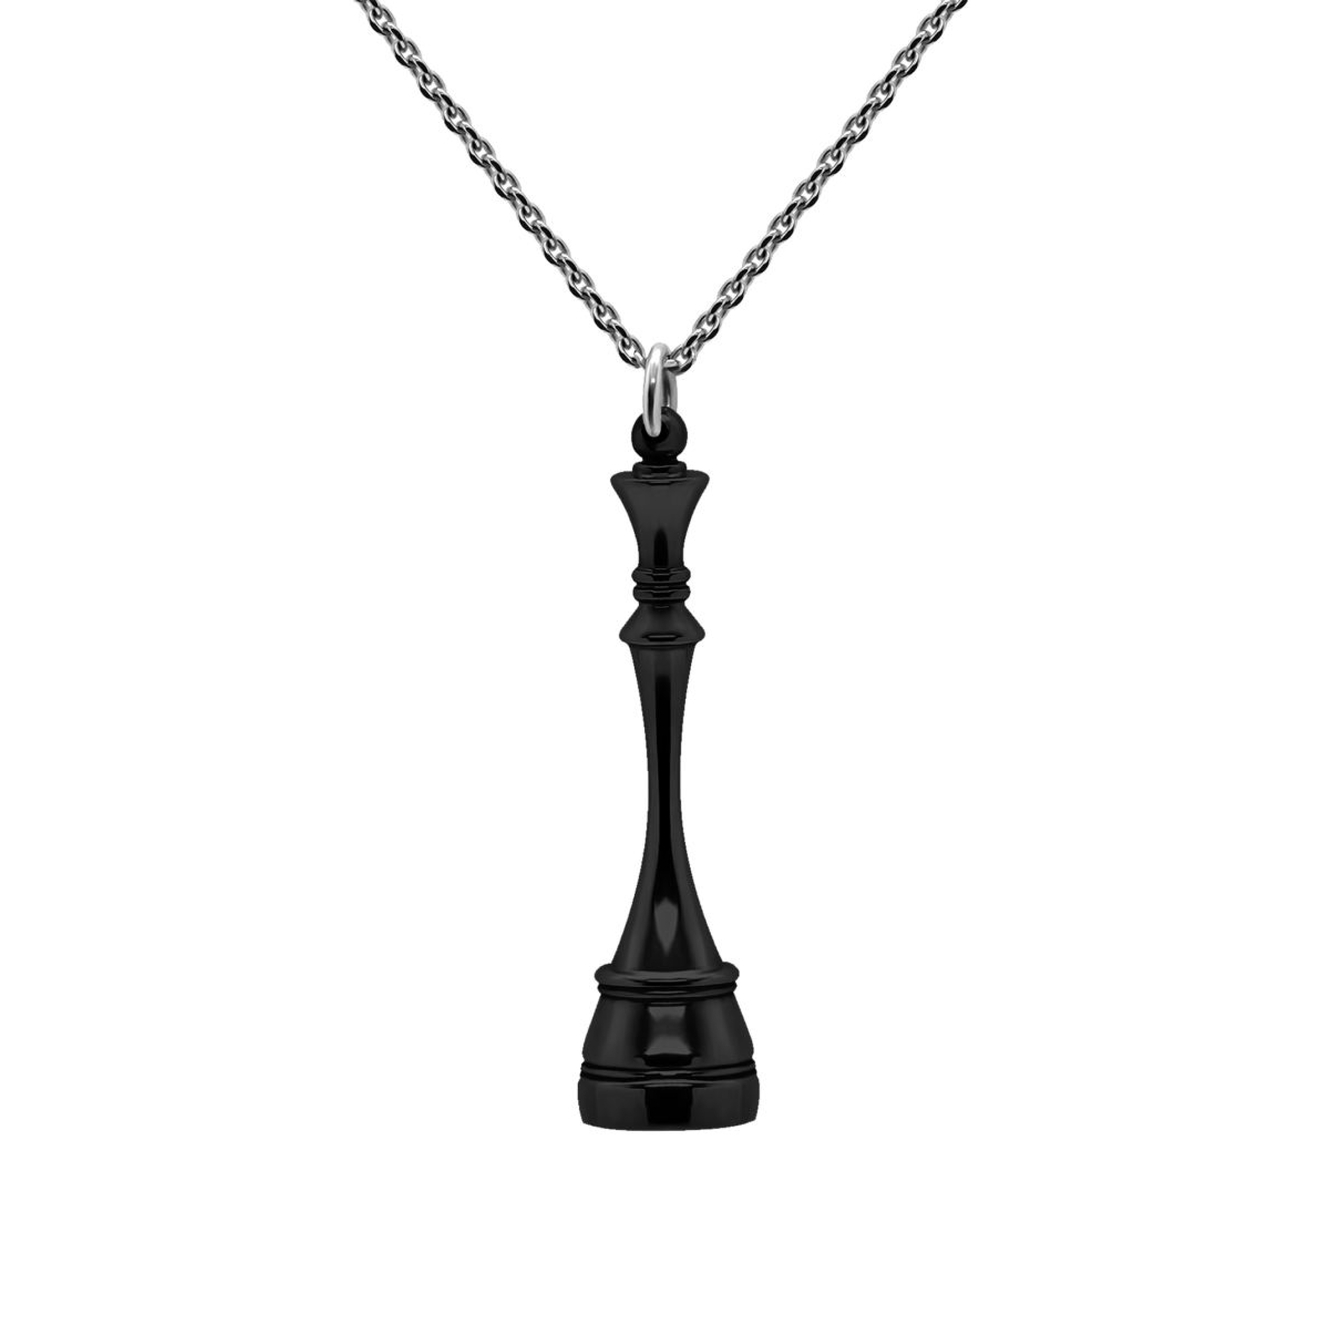 Prosto Jewelry Подвеска Королева Black из серебра